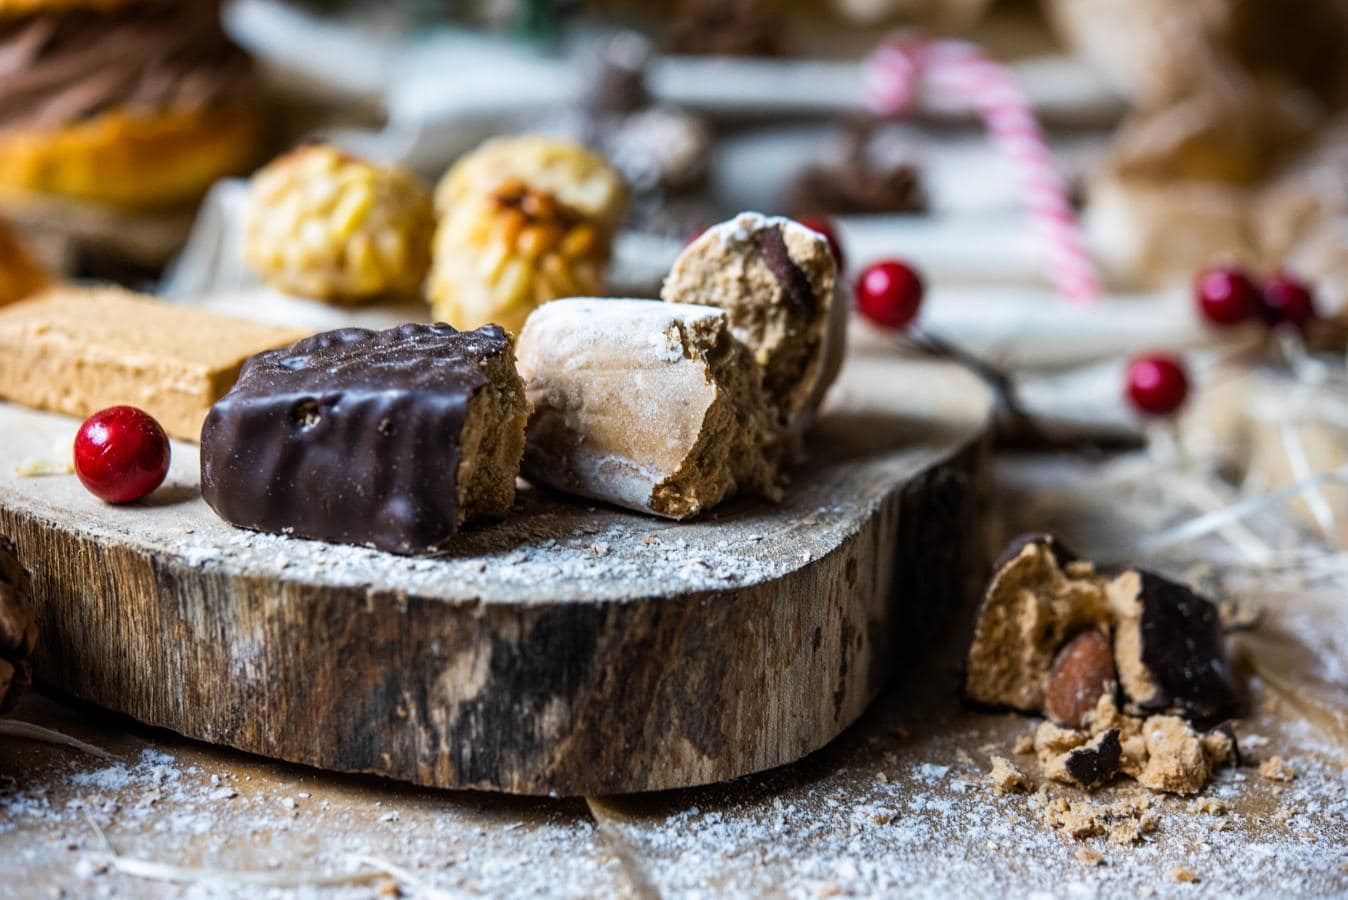 Para los que adoran los dulces navideños. Las bandejas de dulces navideños son una tradición. En Levaduramadre Natural Bakery las posibilidades se multiplican, desde mazapanes a polvorones, turrones o galletitas de jengibre. Recuerda elegir lo más saludable.